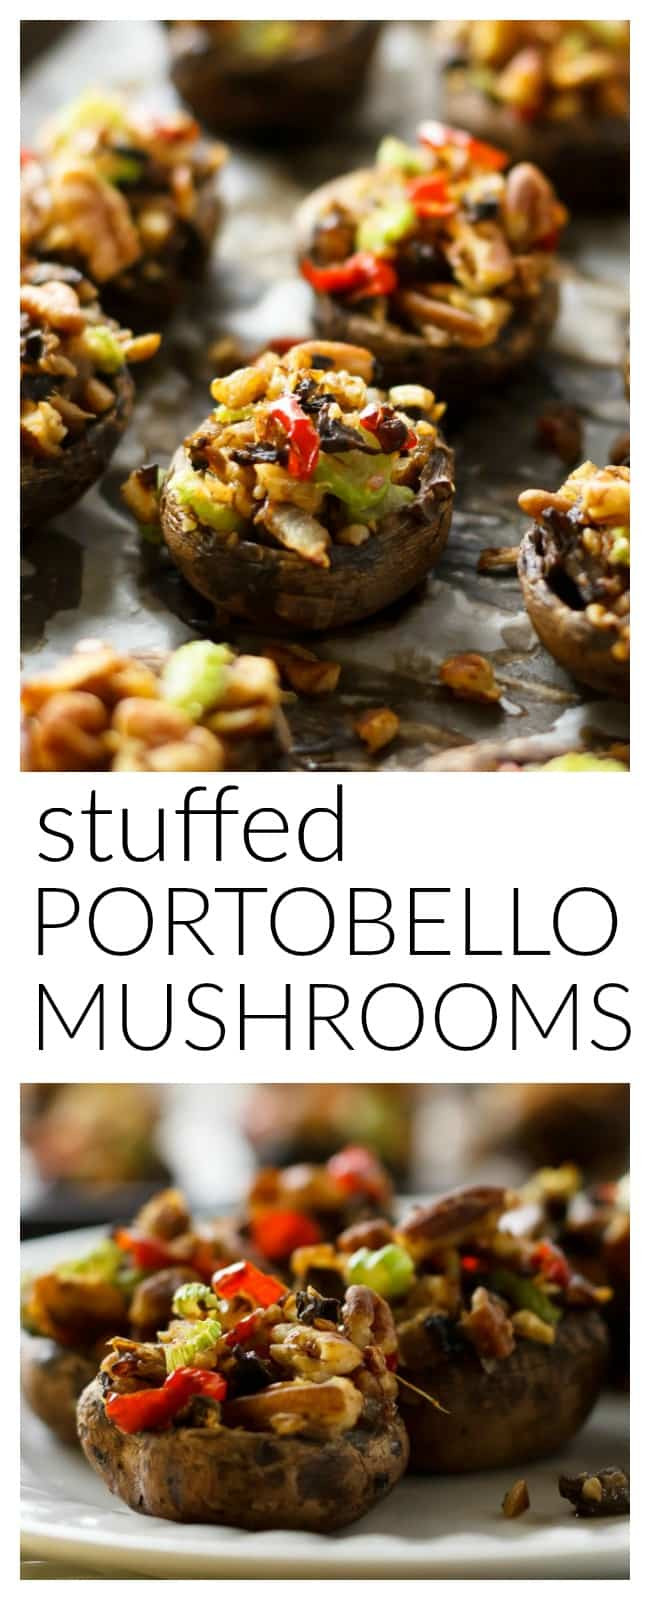 Vegan Stuffed Portobello Mushroom Recipe
 Vegan Stuffed Portobello Mushrooms